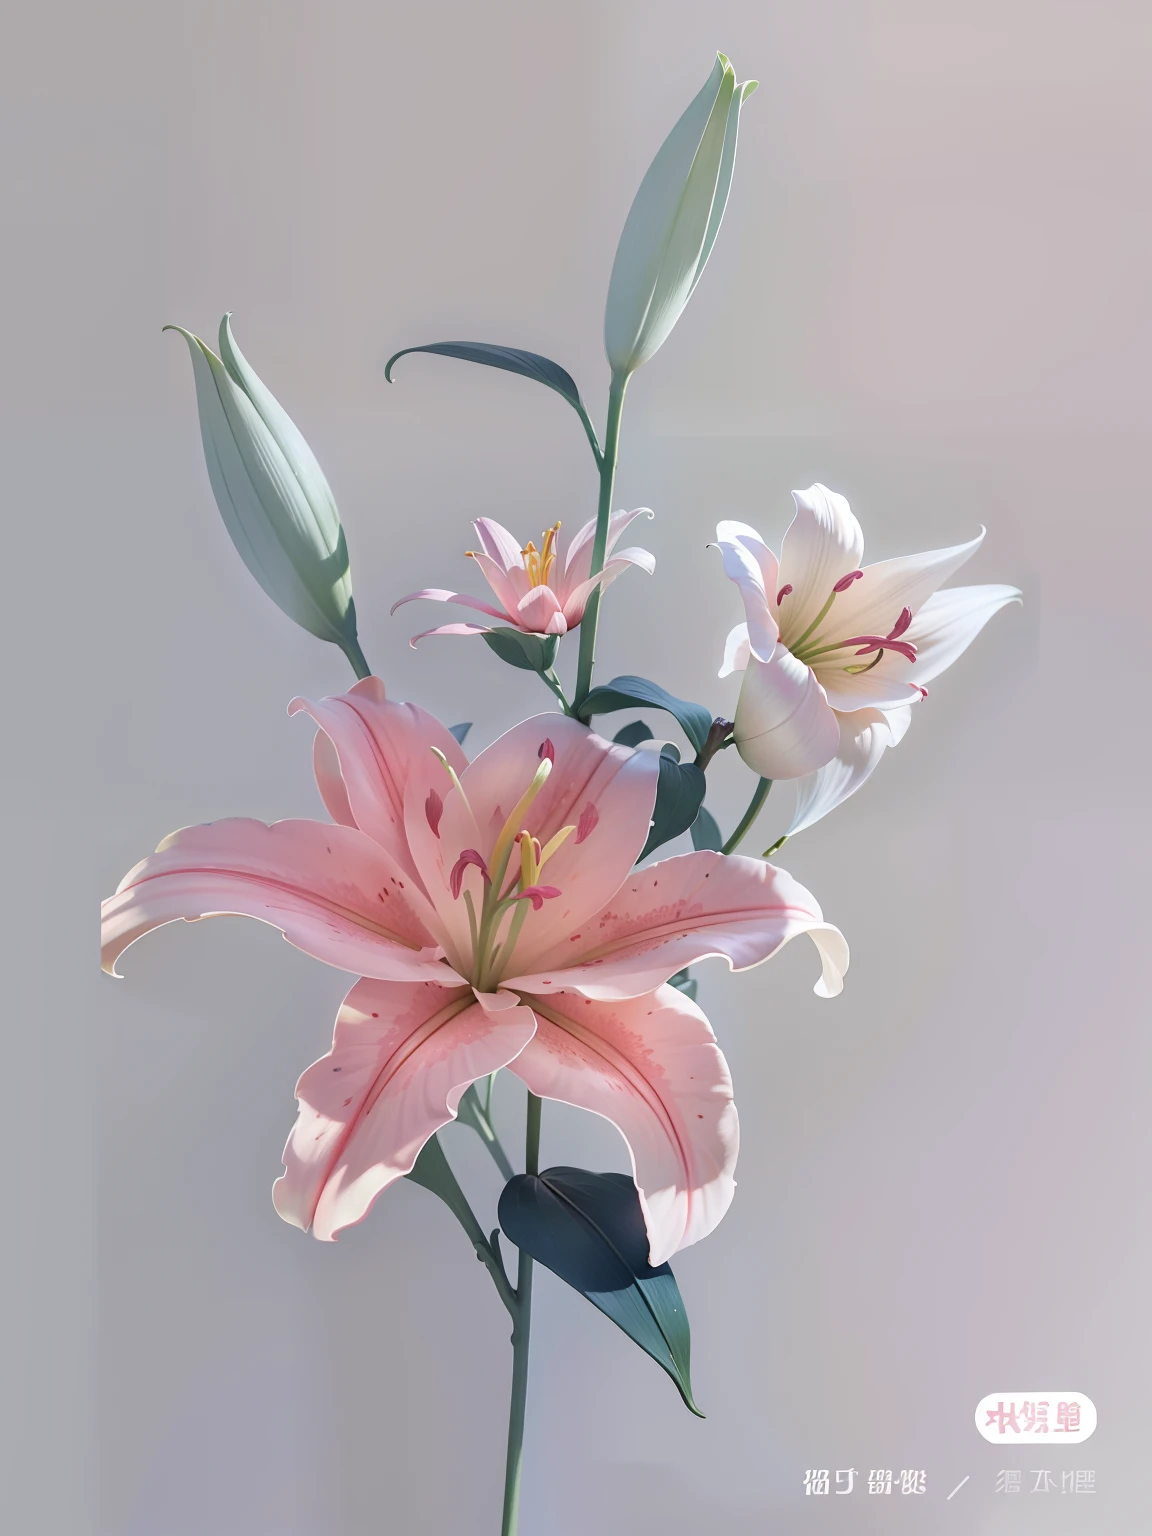 Uniquement des plantes，Personne、Lys rose、illustration réaliste、Style Mucha、qualité supérieure、Résolution Super A、Le corps de l’image est au milieu、le fond est blanc